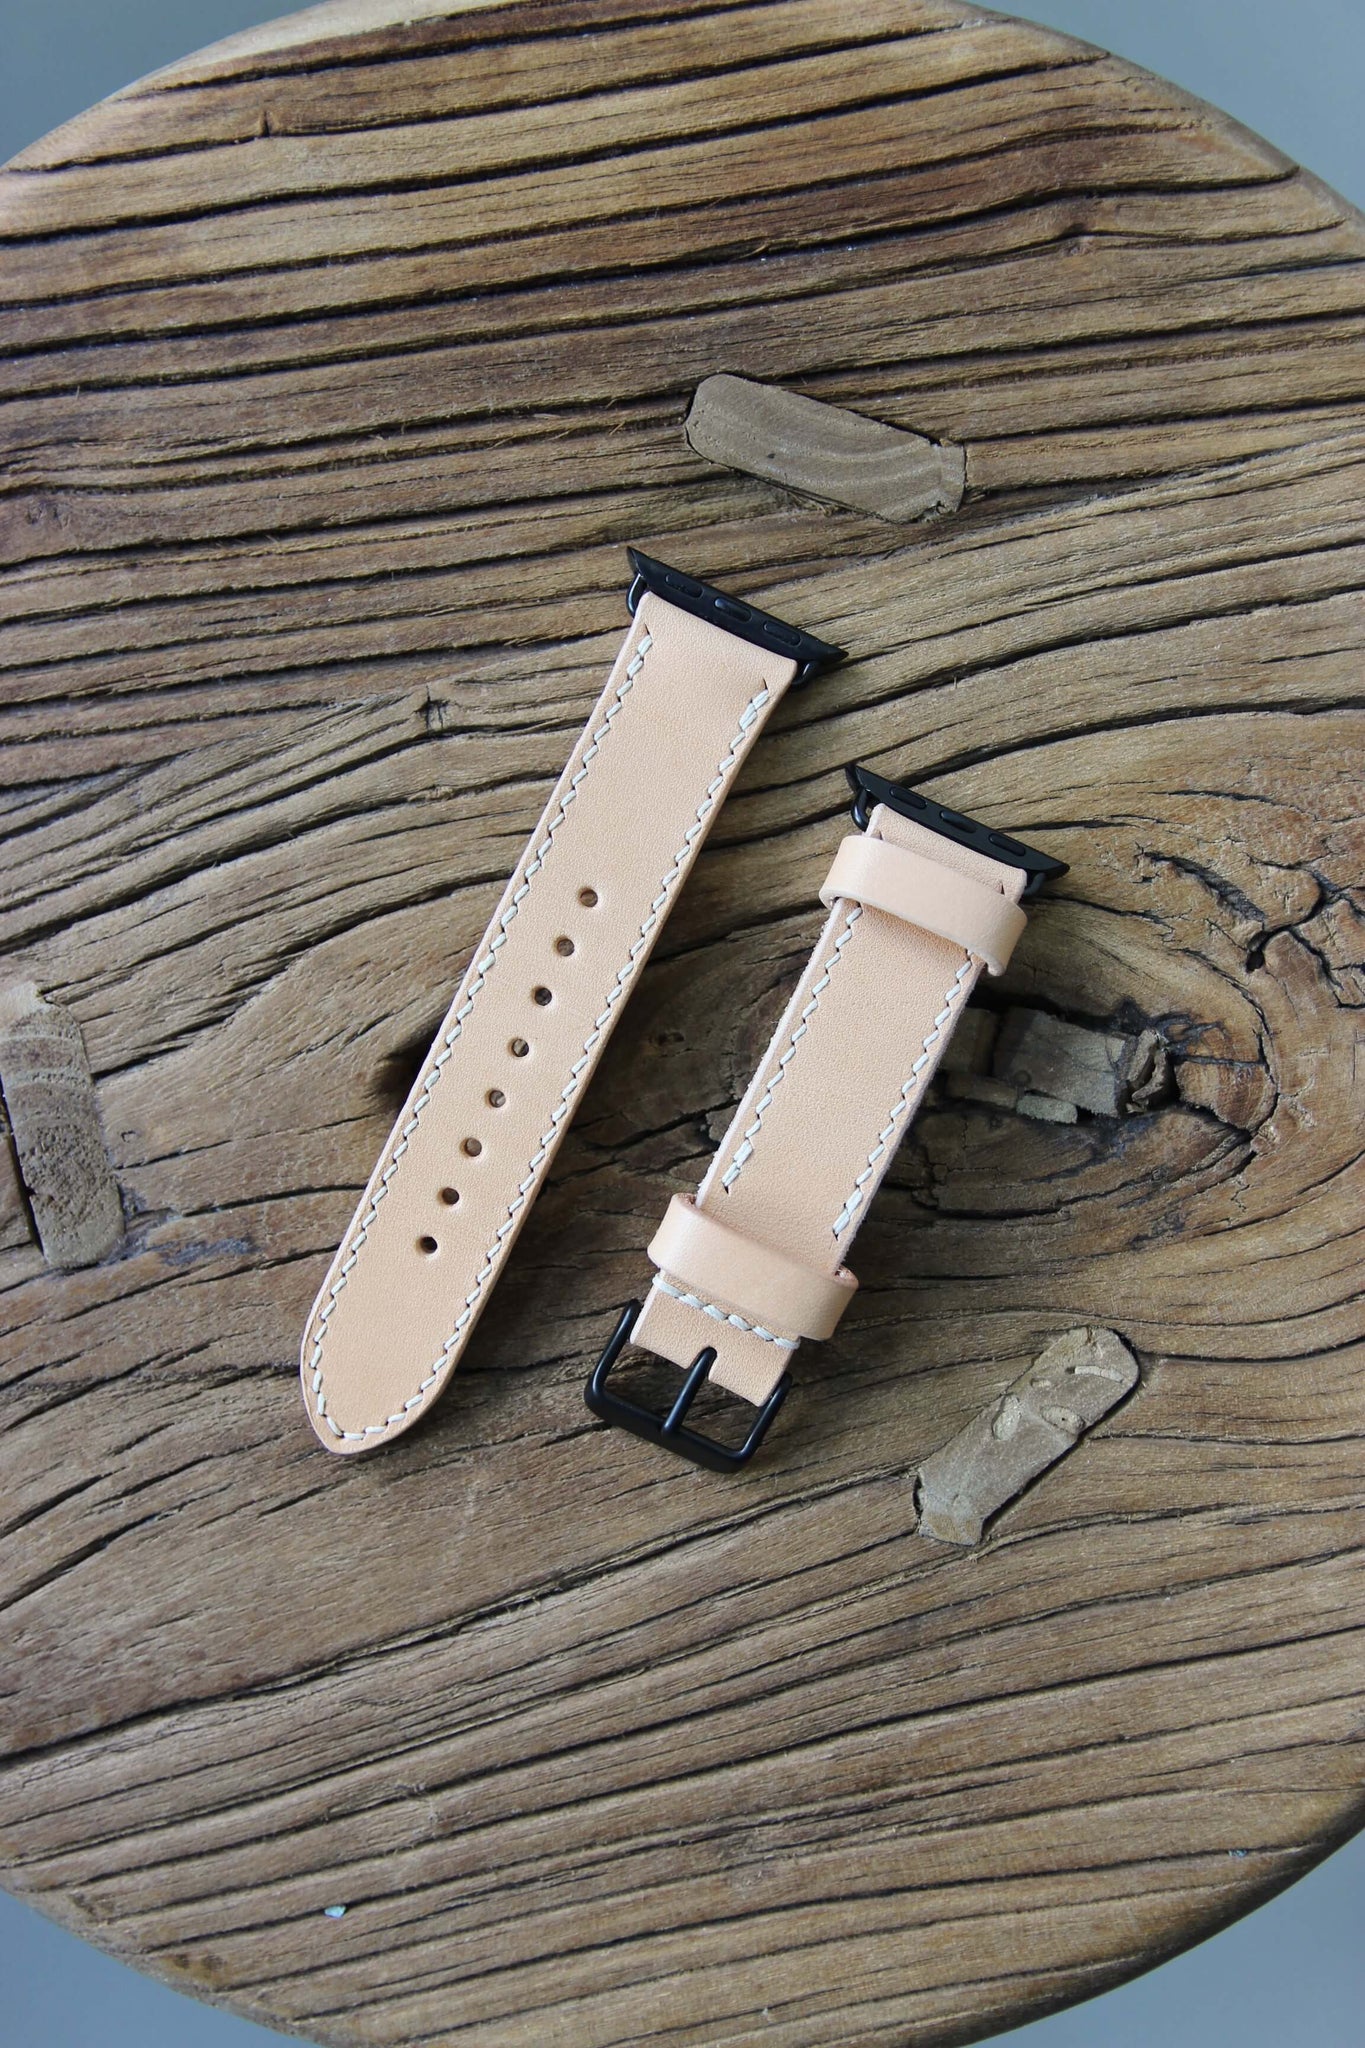 Apple Watch Lederarmband in Natural auf einem Holzhocker liegend.